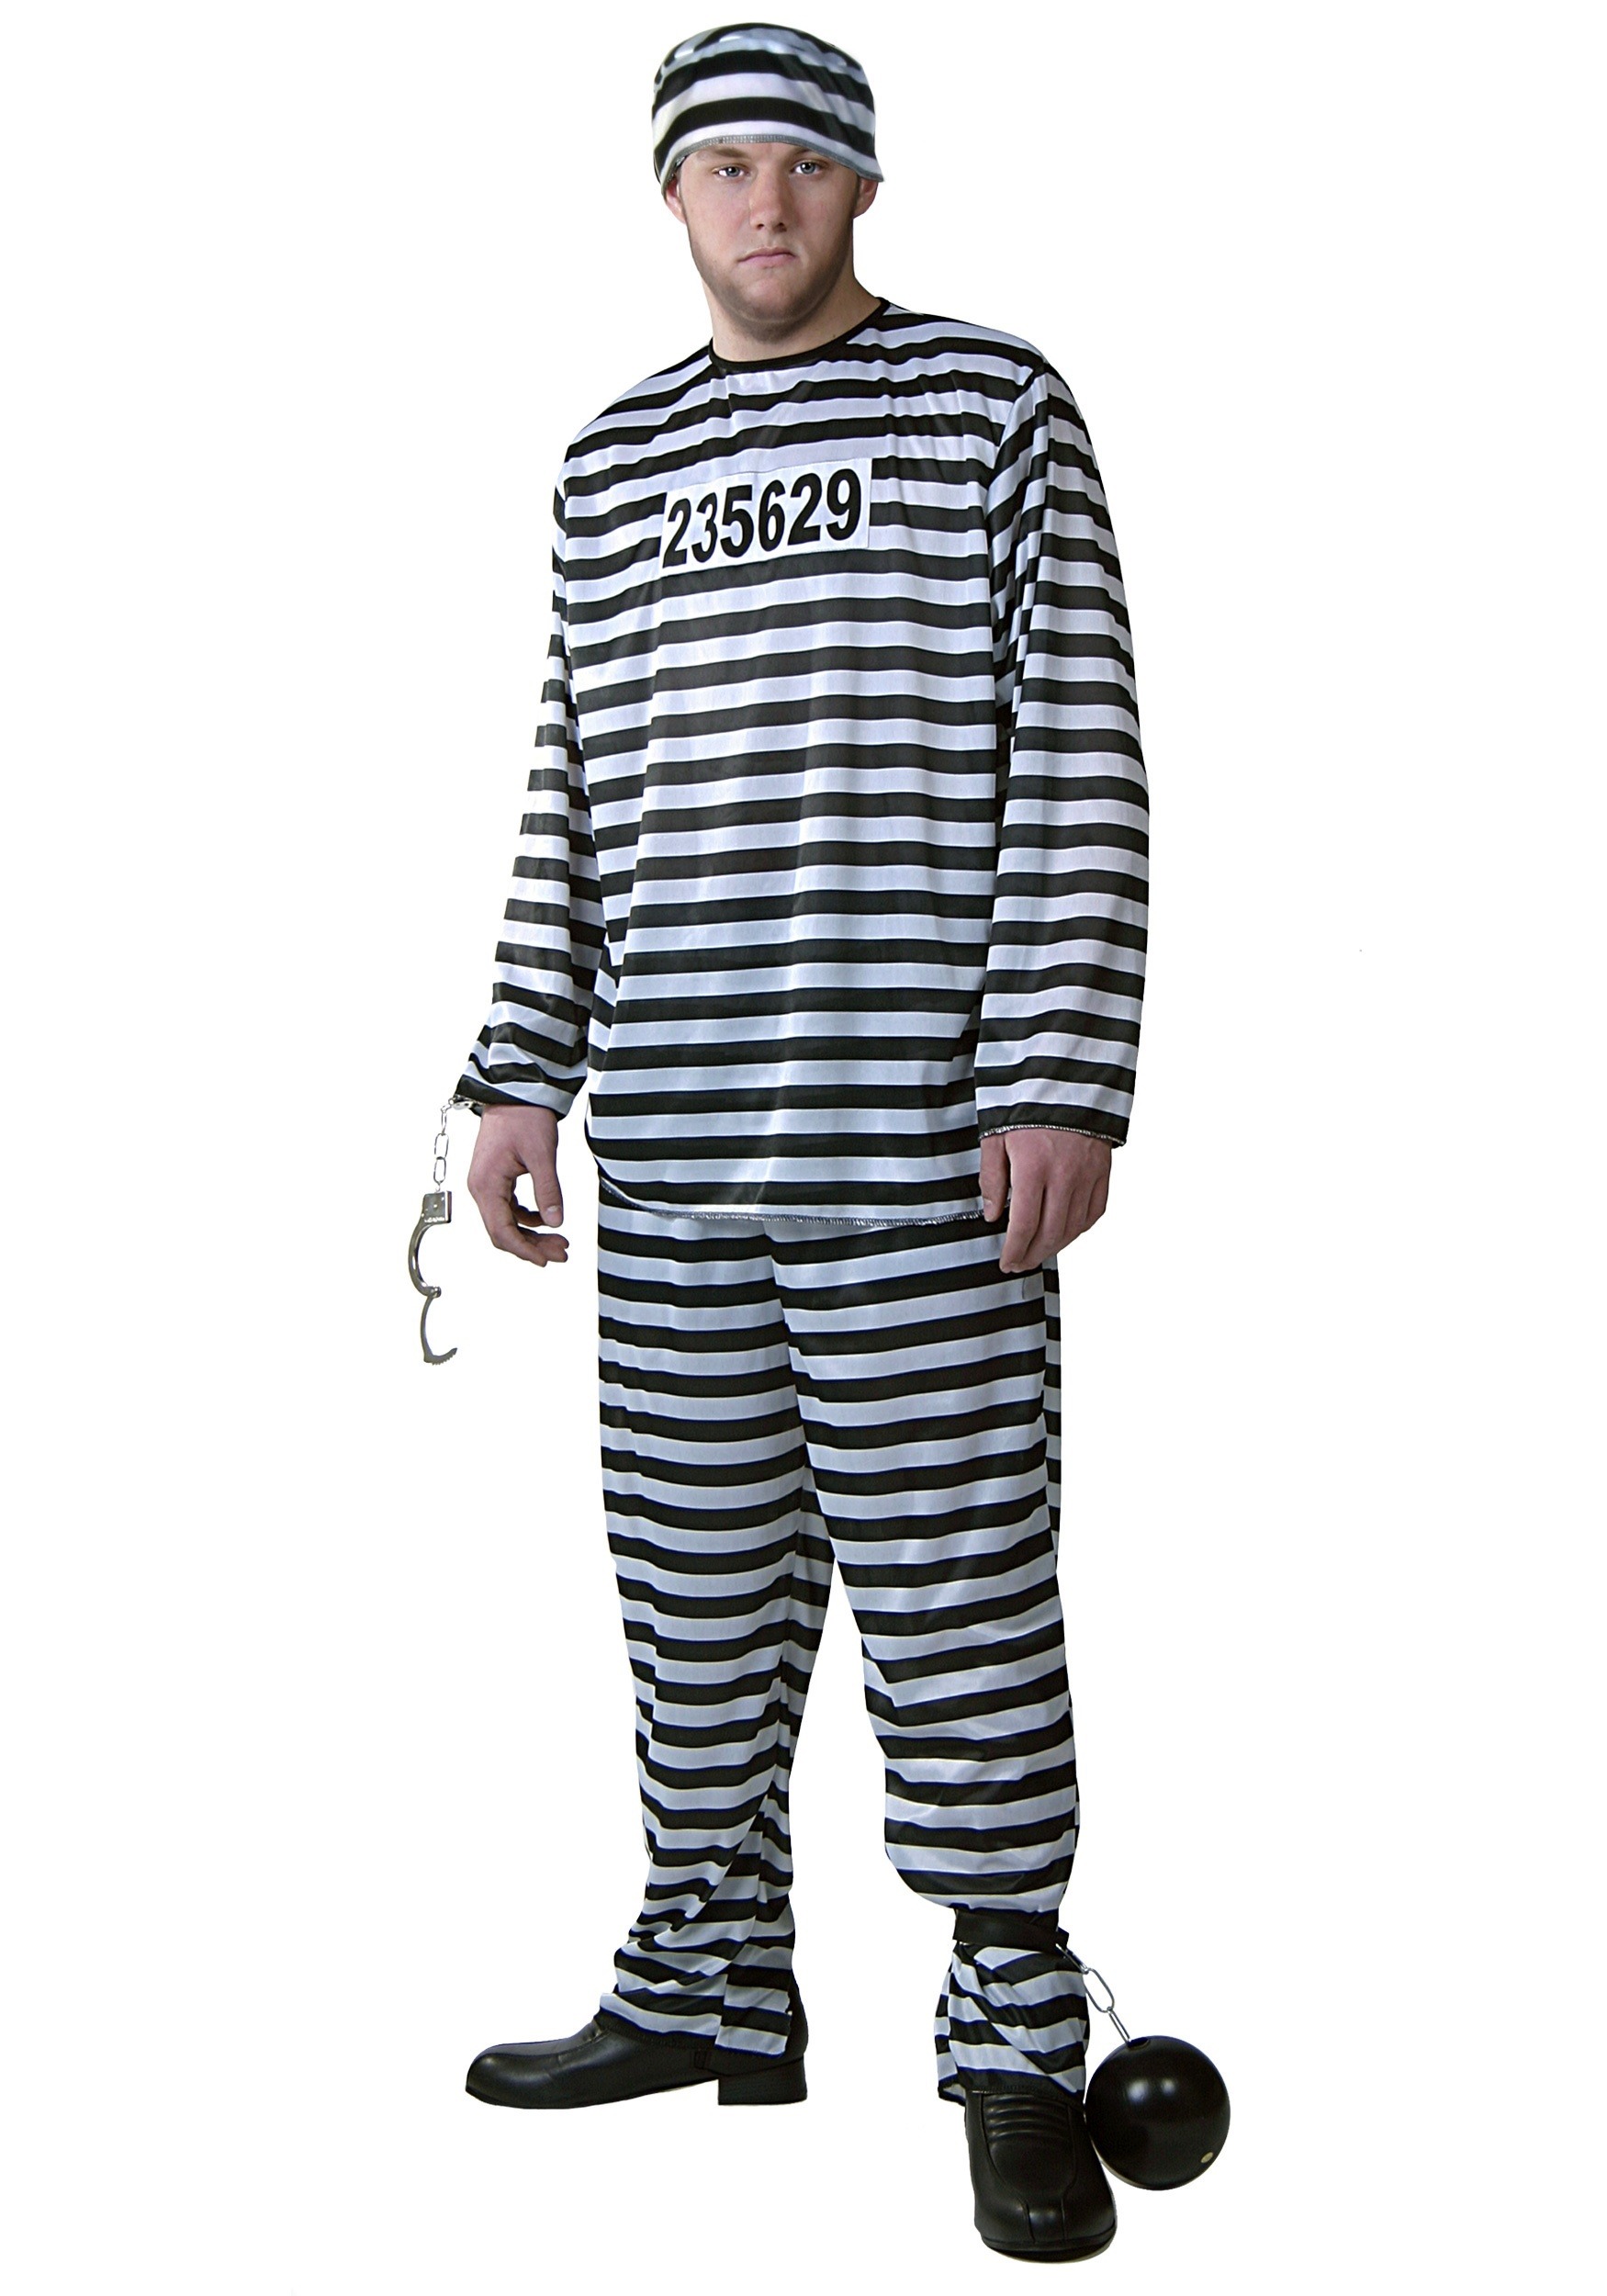 5 HALLOWEEN-Convict ASYLUM ZOMBIE Costume All Men's Sizes ORANGE PRISONER 